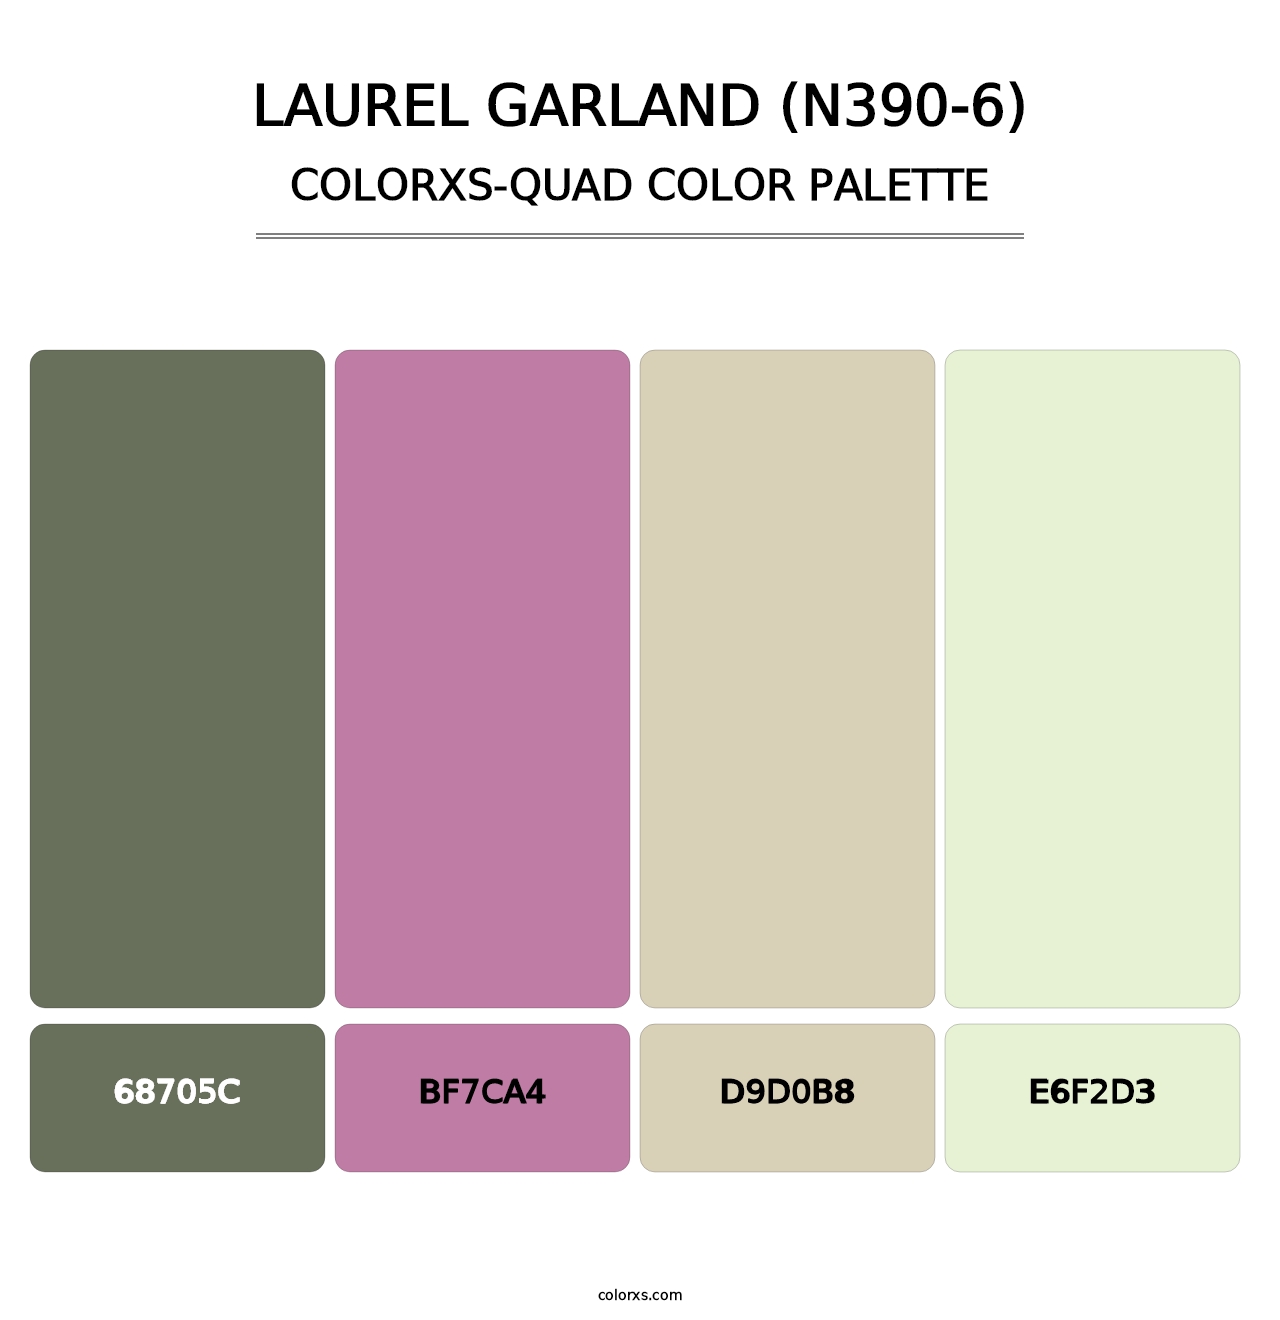 Laurel Garland (N390-6) - Colorxs Quad Palette